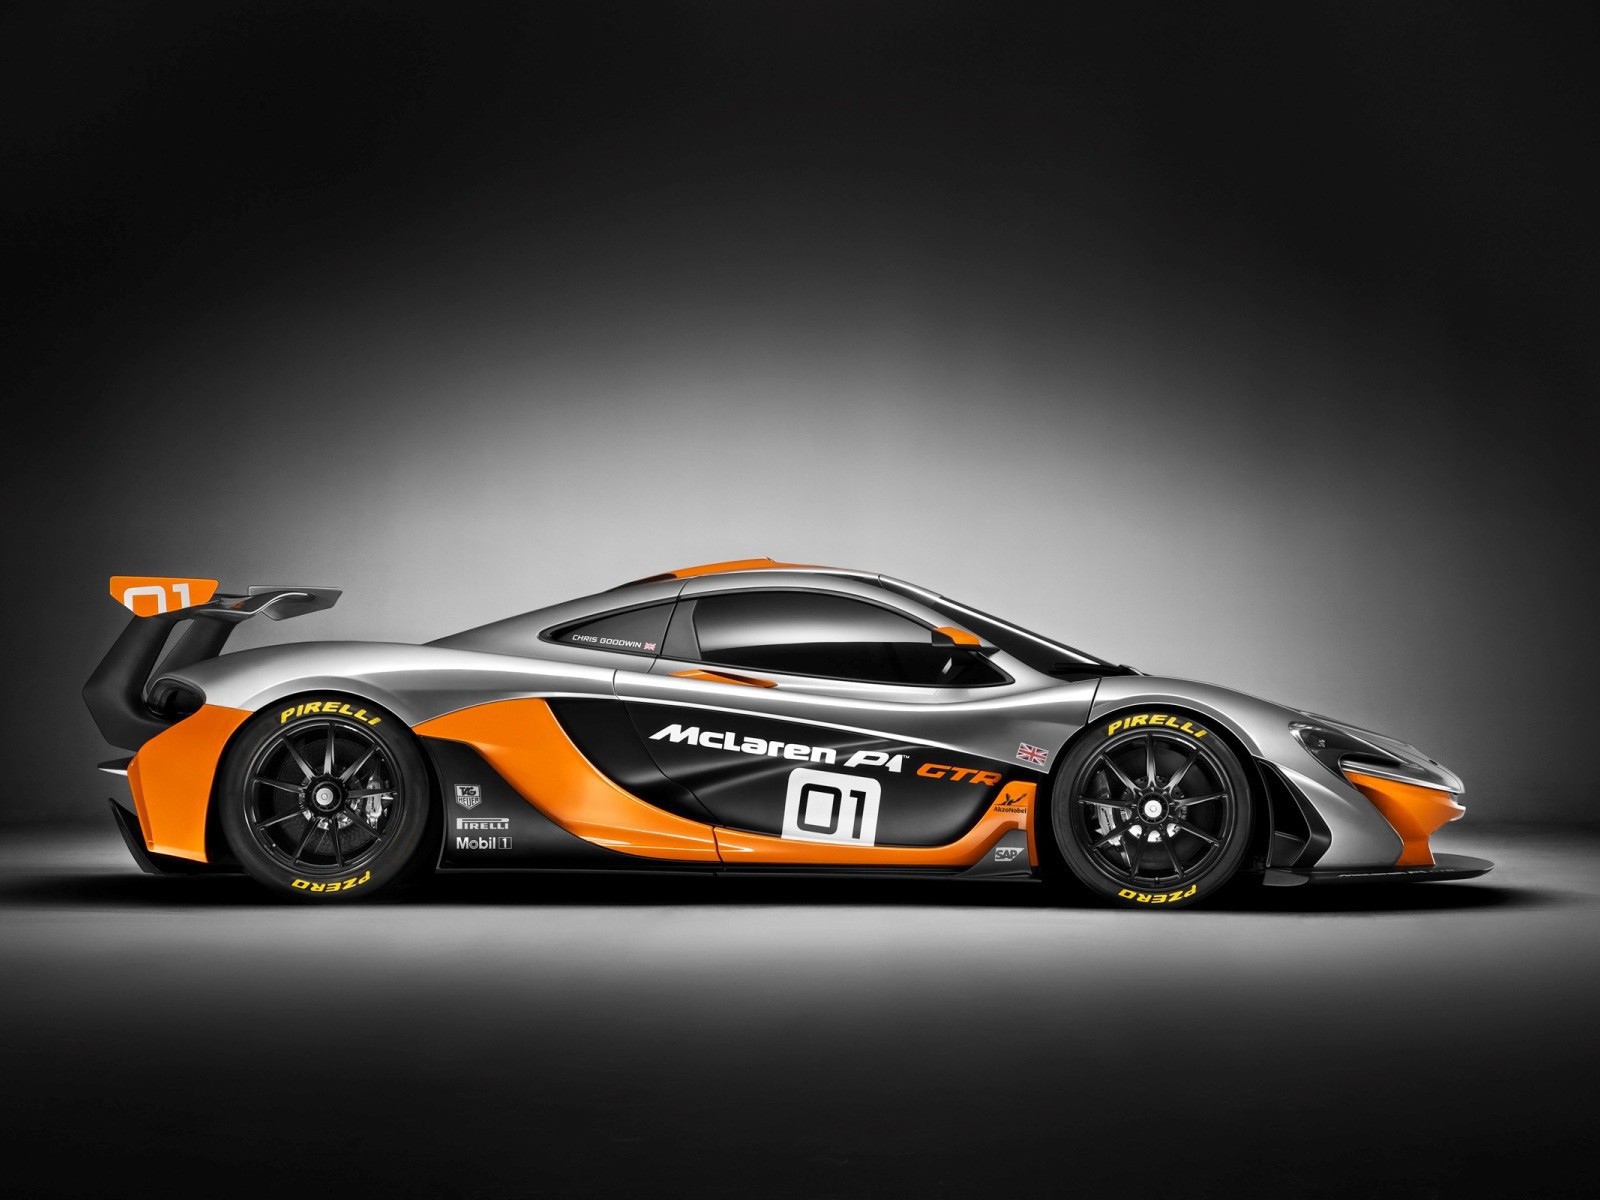 Black and orange color sports McLaren P1